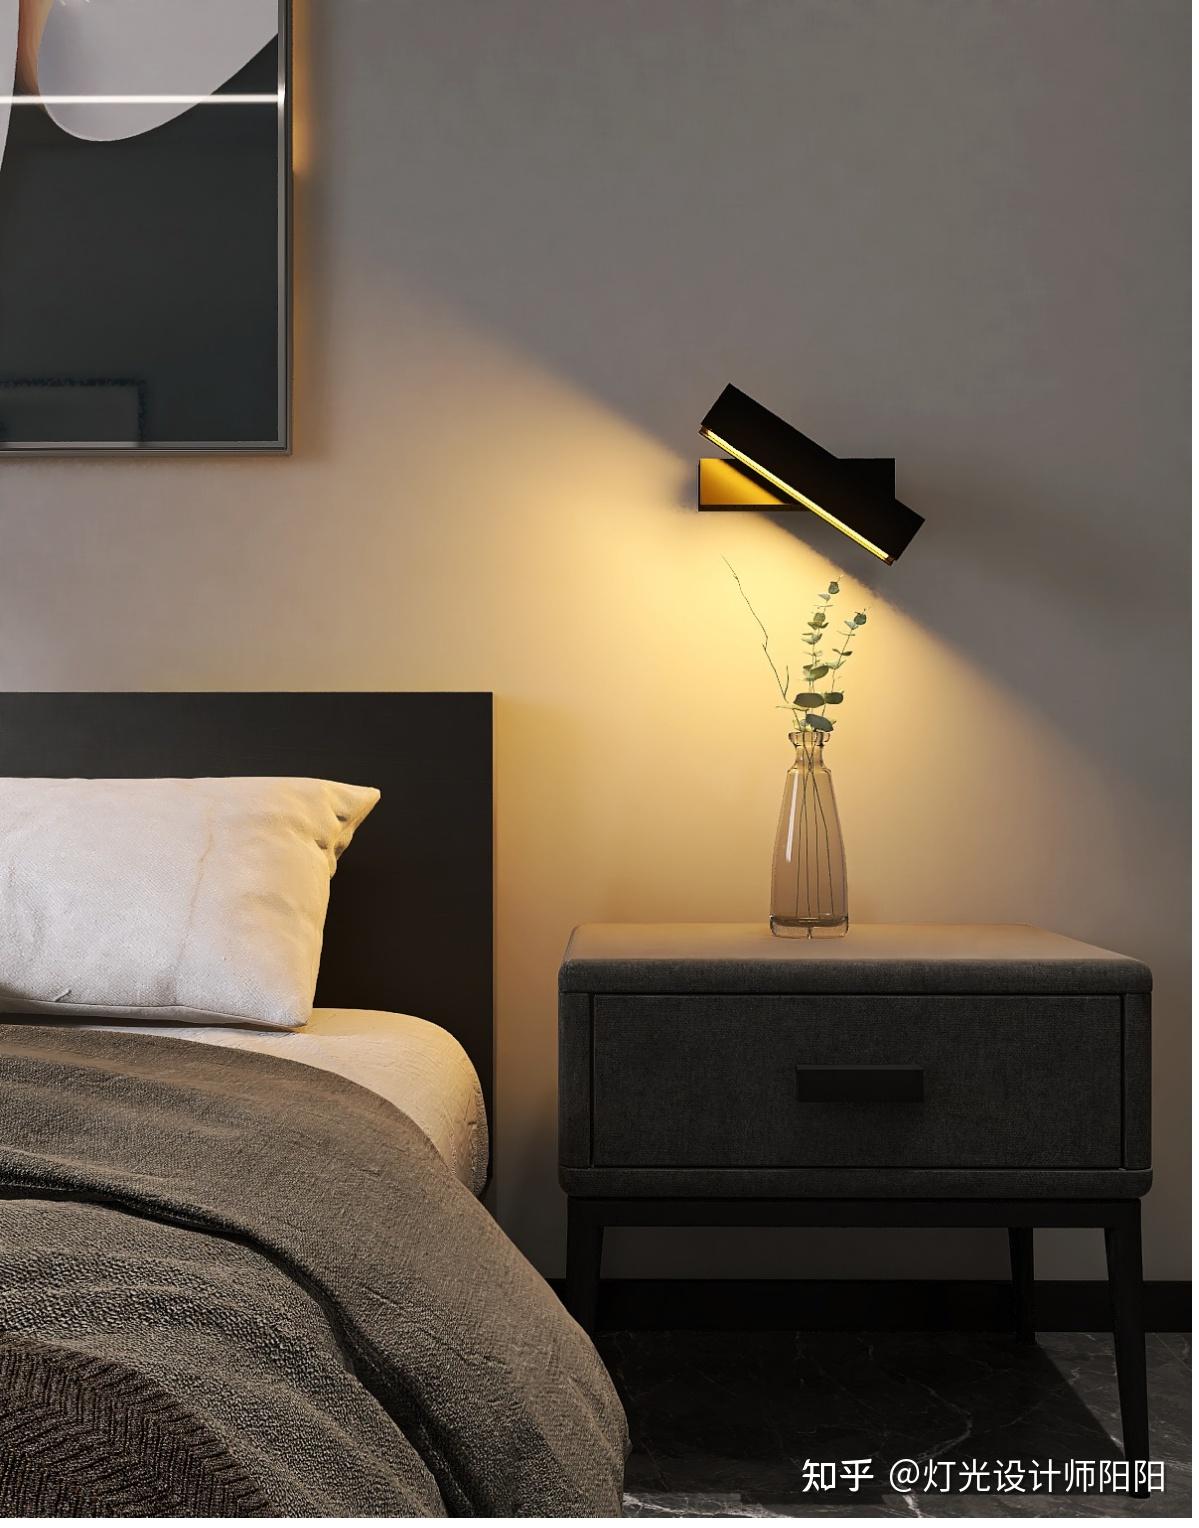 家装卧室床头,壁灯高度多少合适? 